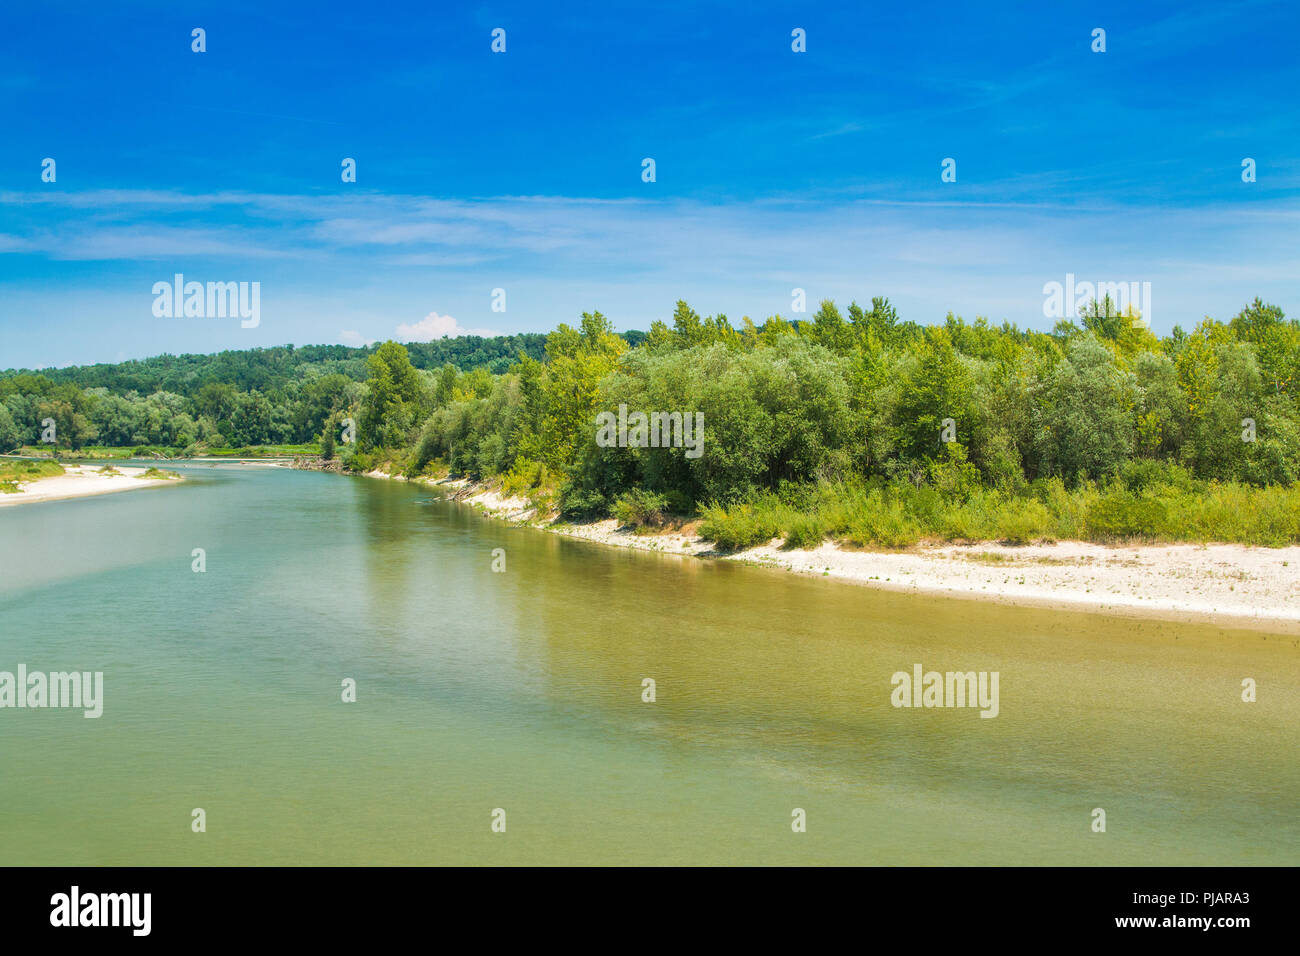 Wunderschöne Landschaft, Zusammenfluss von Mur und Drau Flüsse in Medjimurje, Kroatien Stockfoto